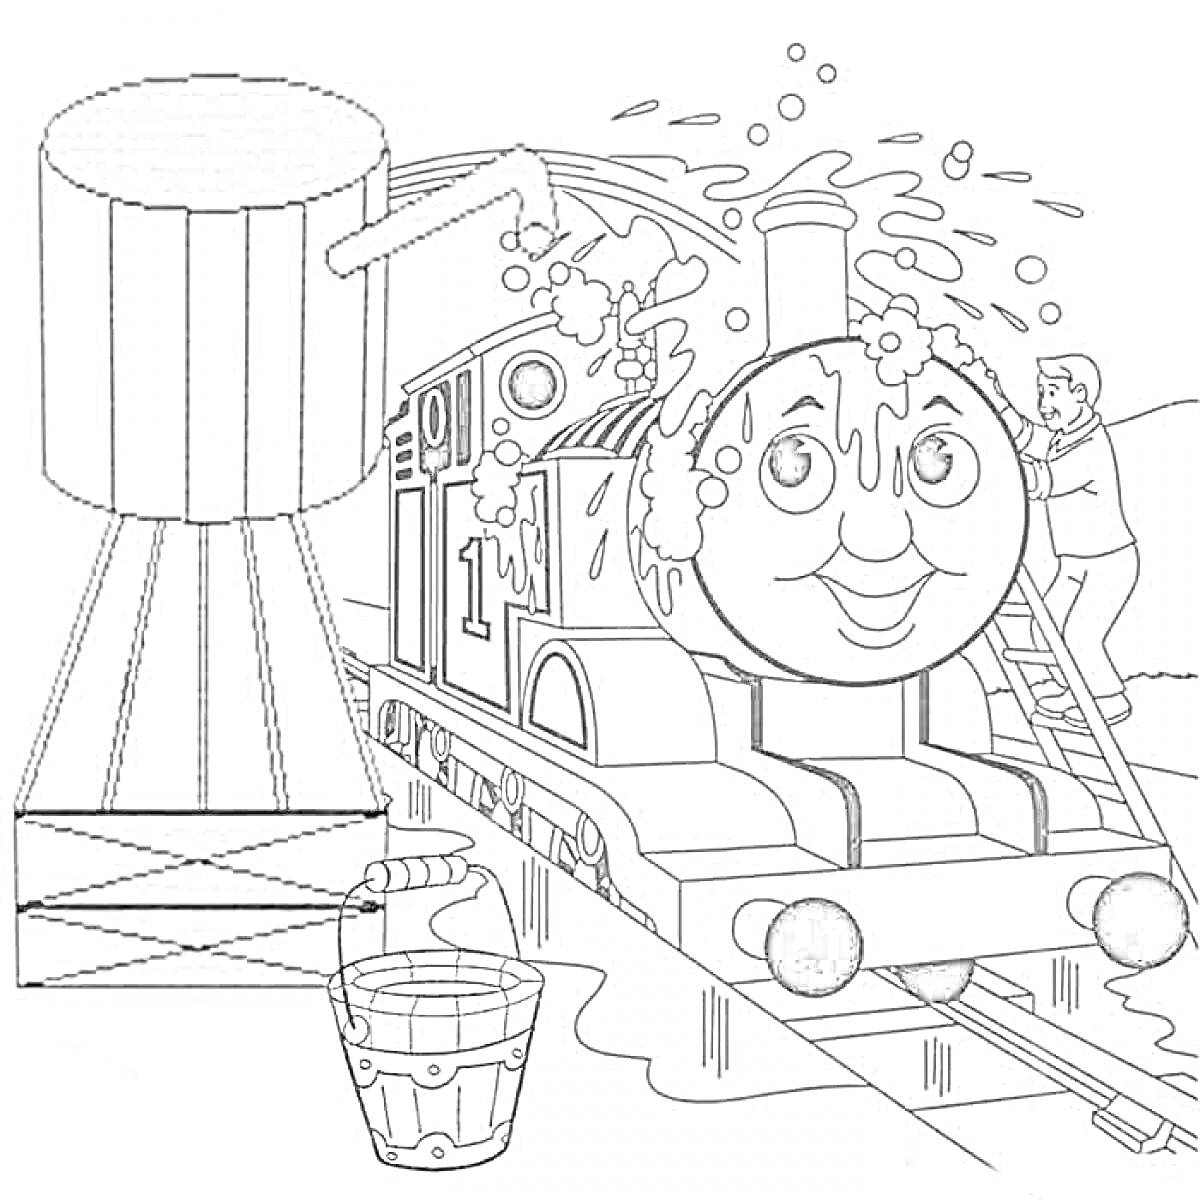 Паровозик Томас на станции, моется водой из бака, рядом ведро и человек с лестницей